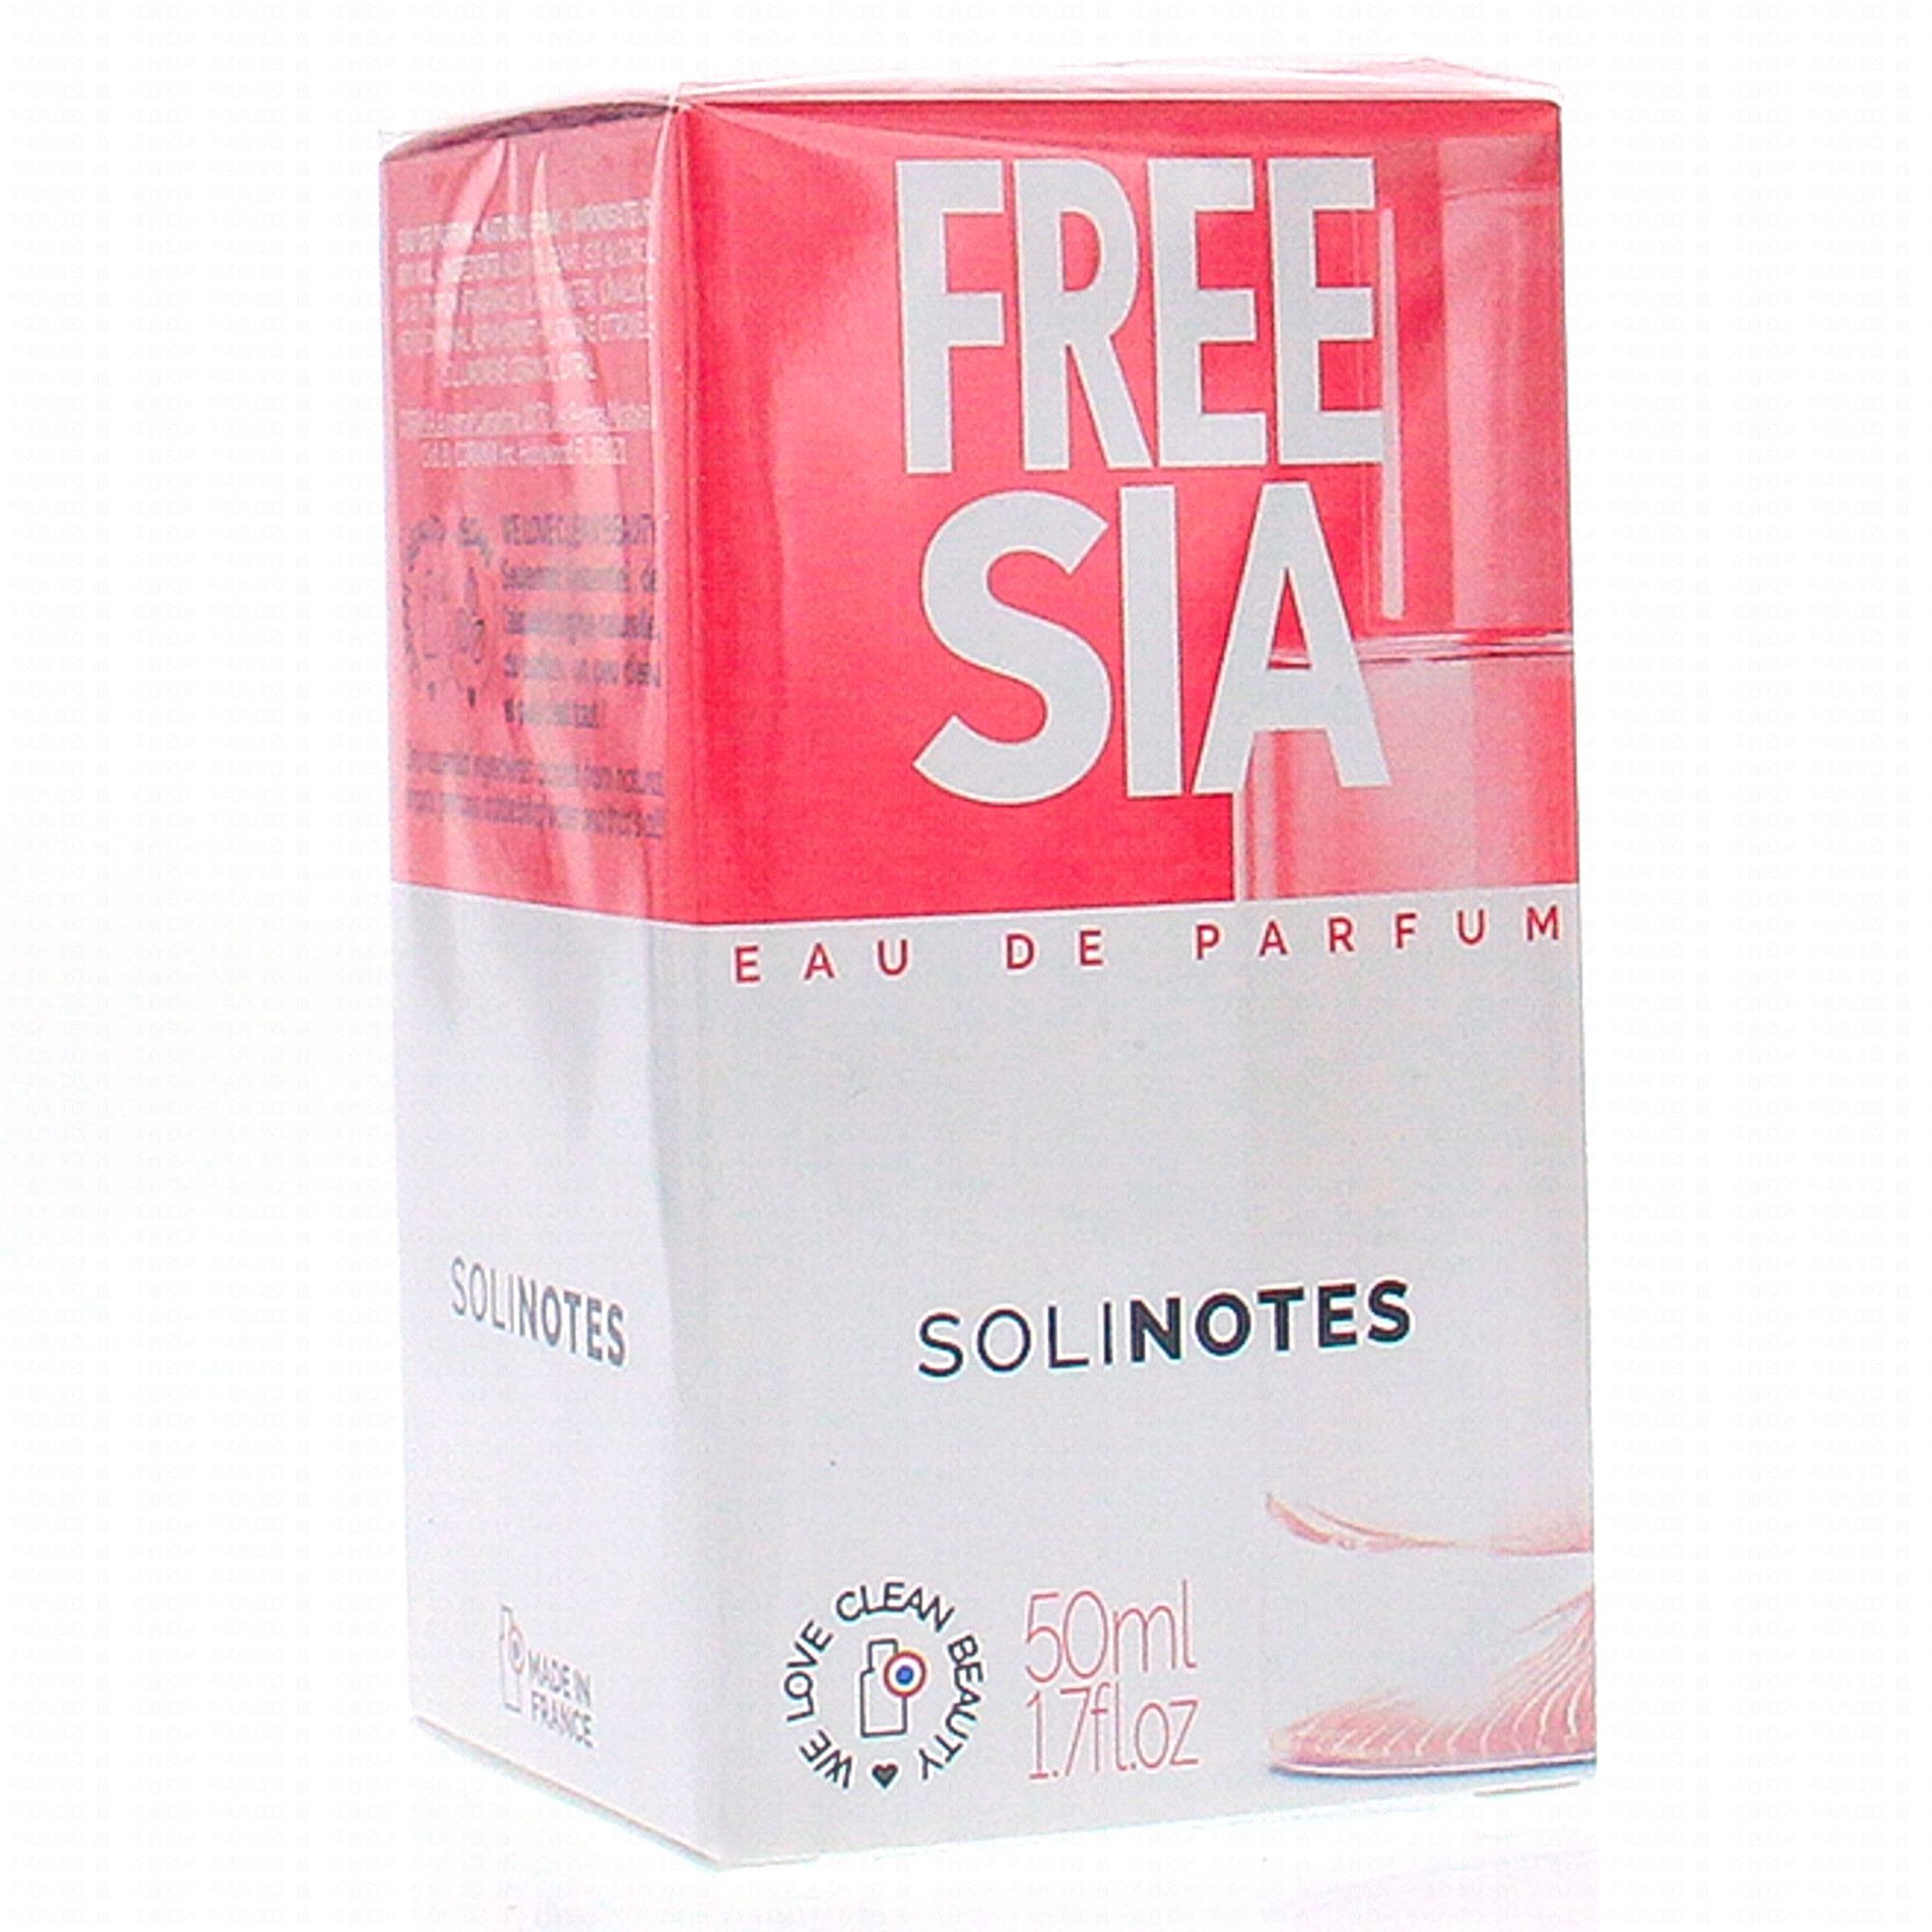 SOLINOTES Eau de parfum freesia (50ml)